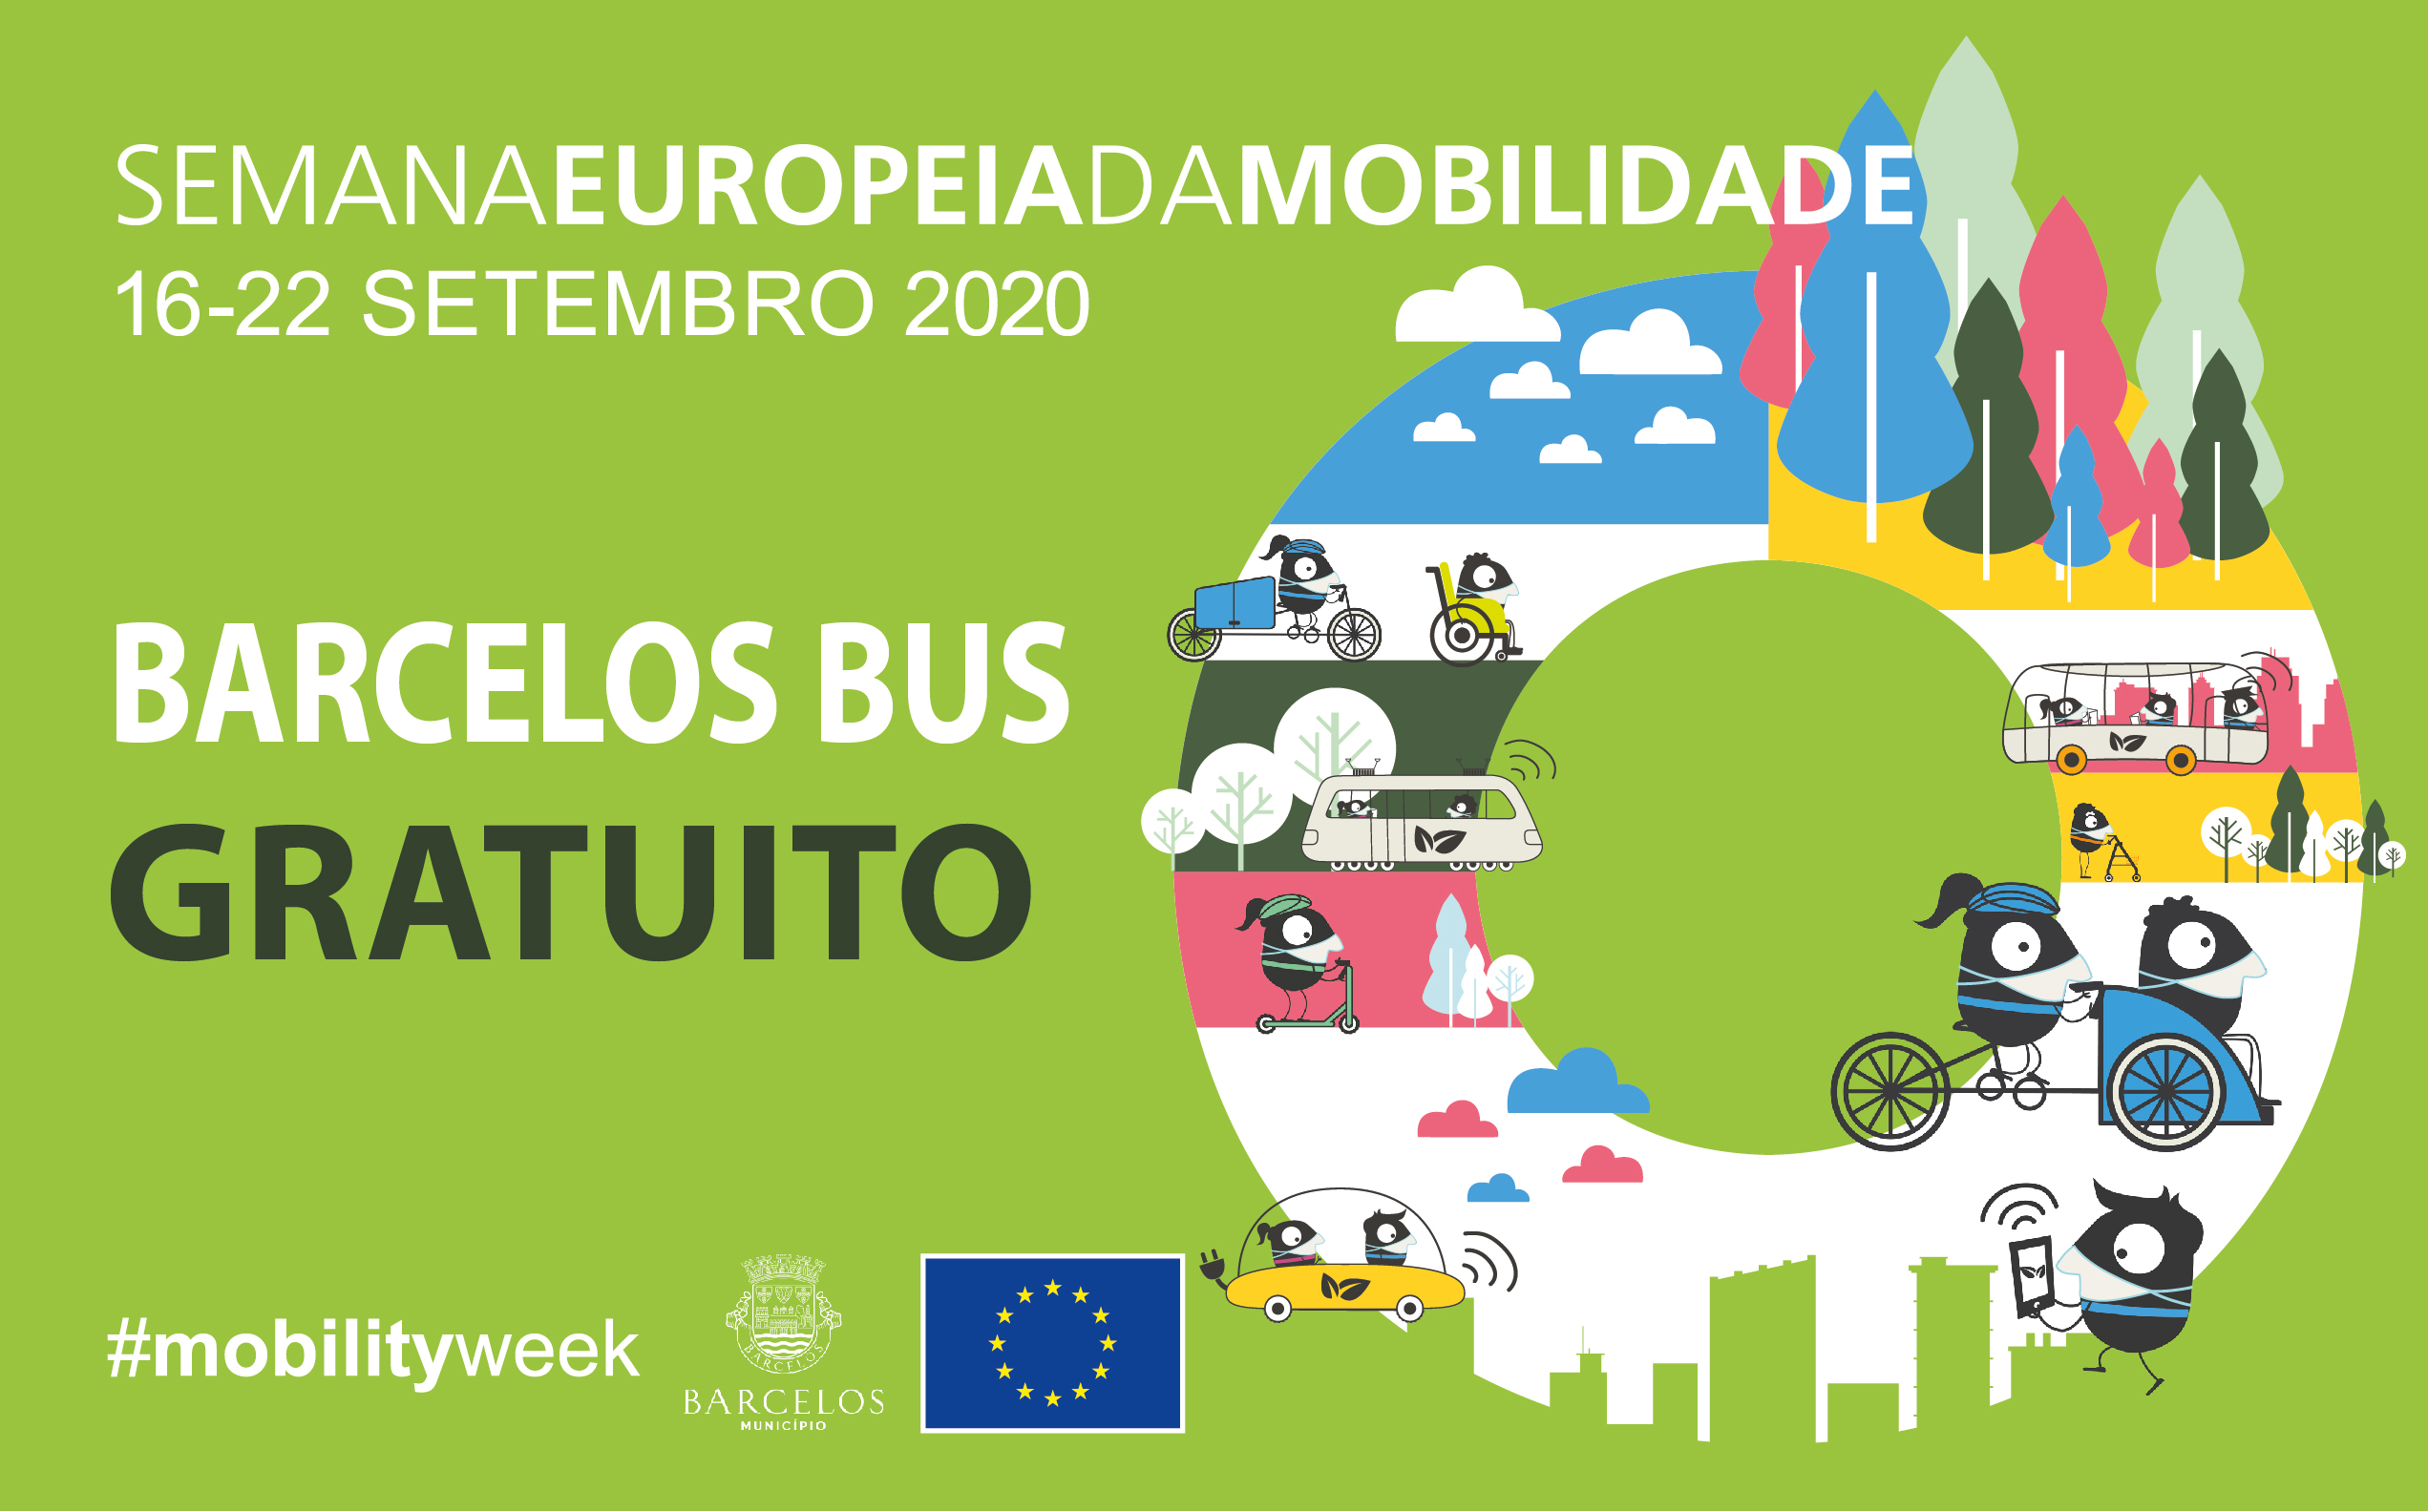 Semana da Mobilidade com “Barcelos Bus” gratuito